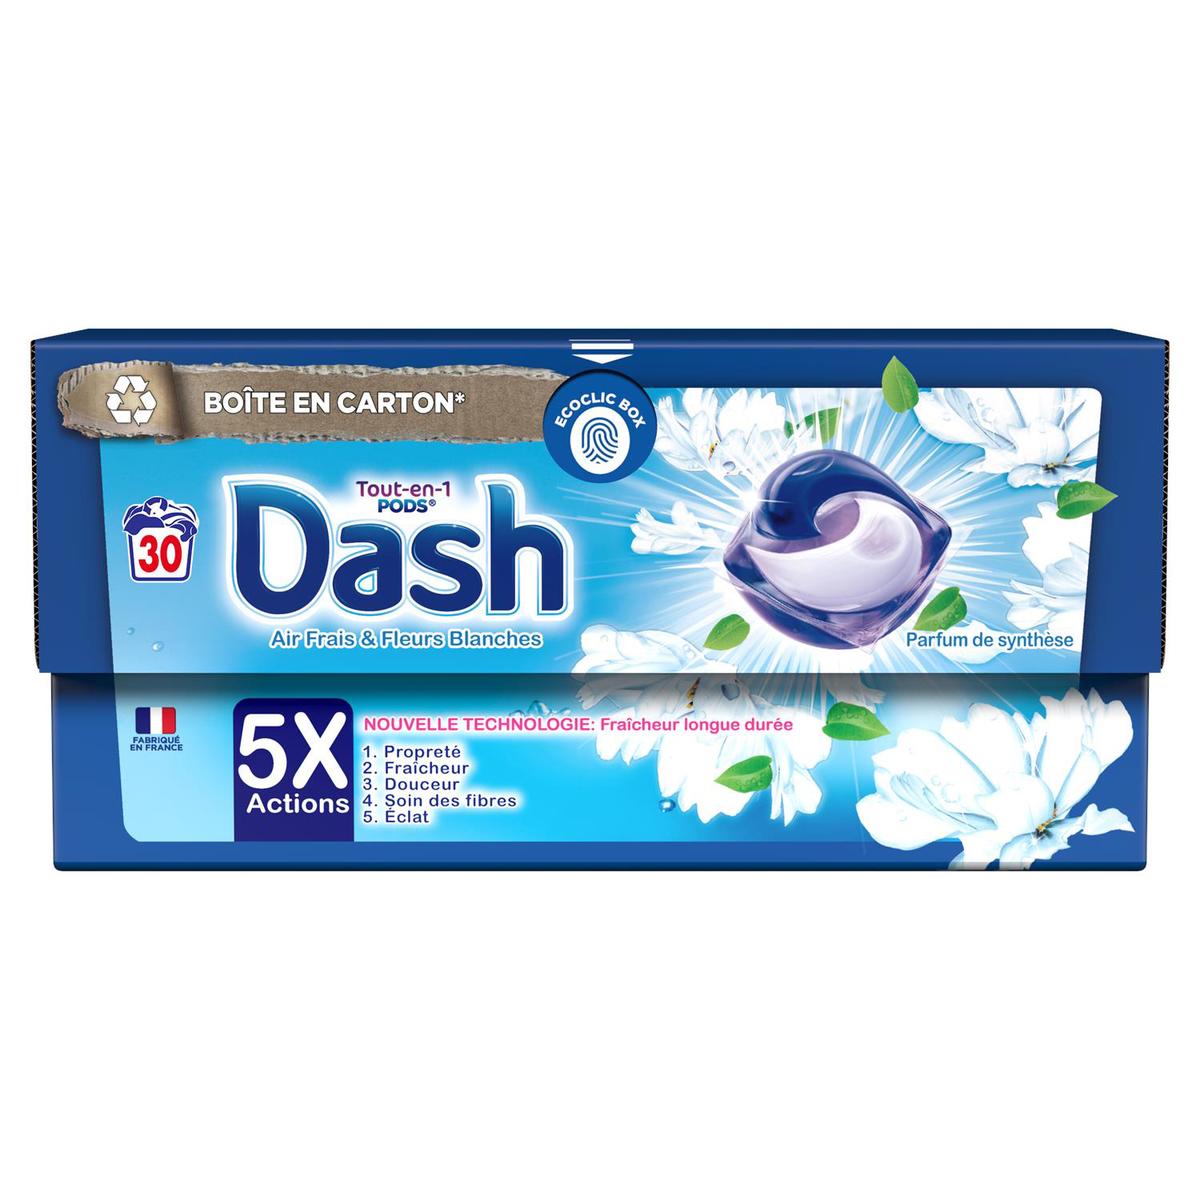 Dash Tout-en-1 Pods - La collection avec Lenor - Envolée d'Air